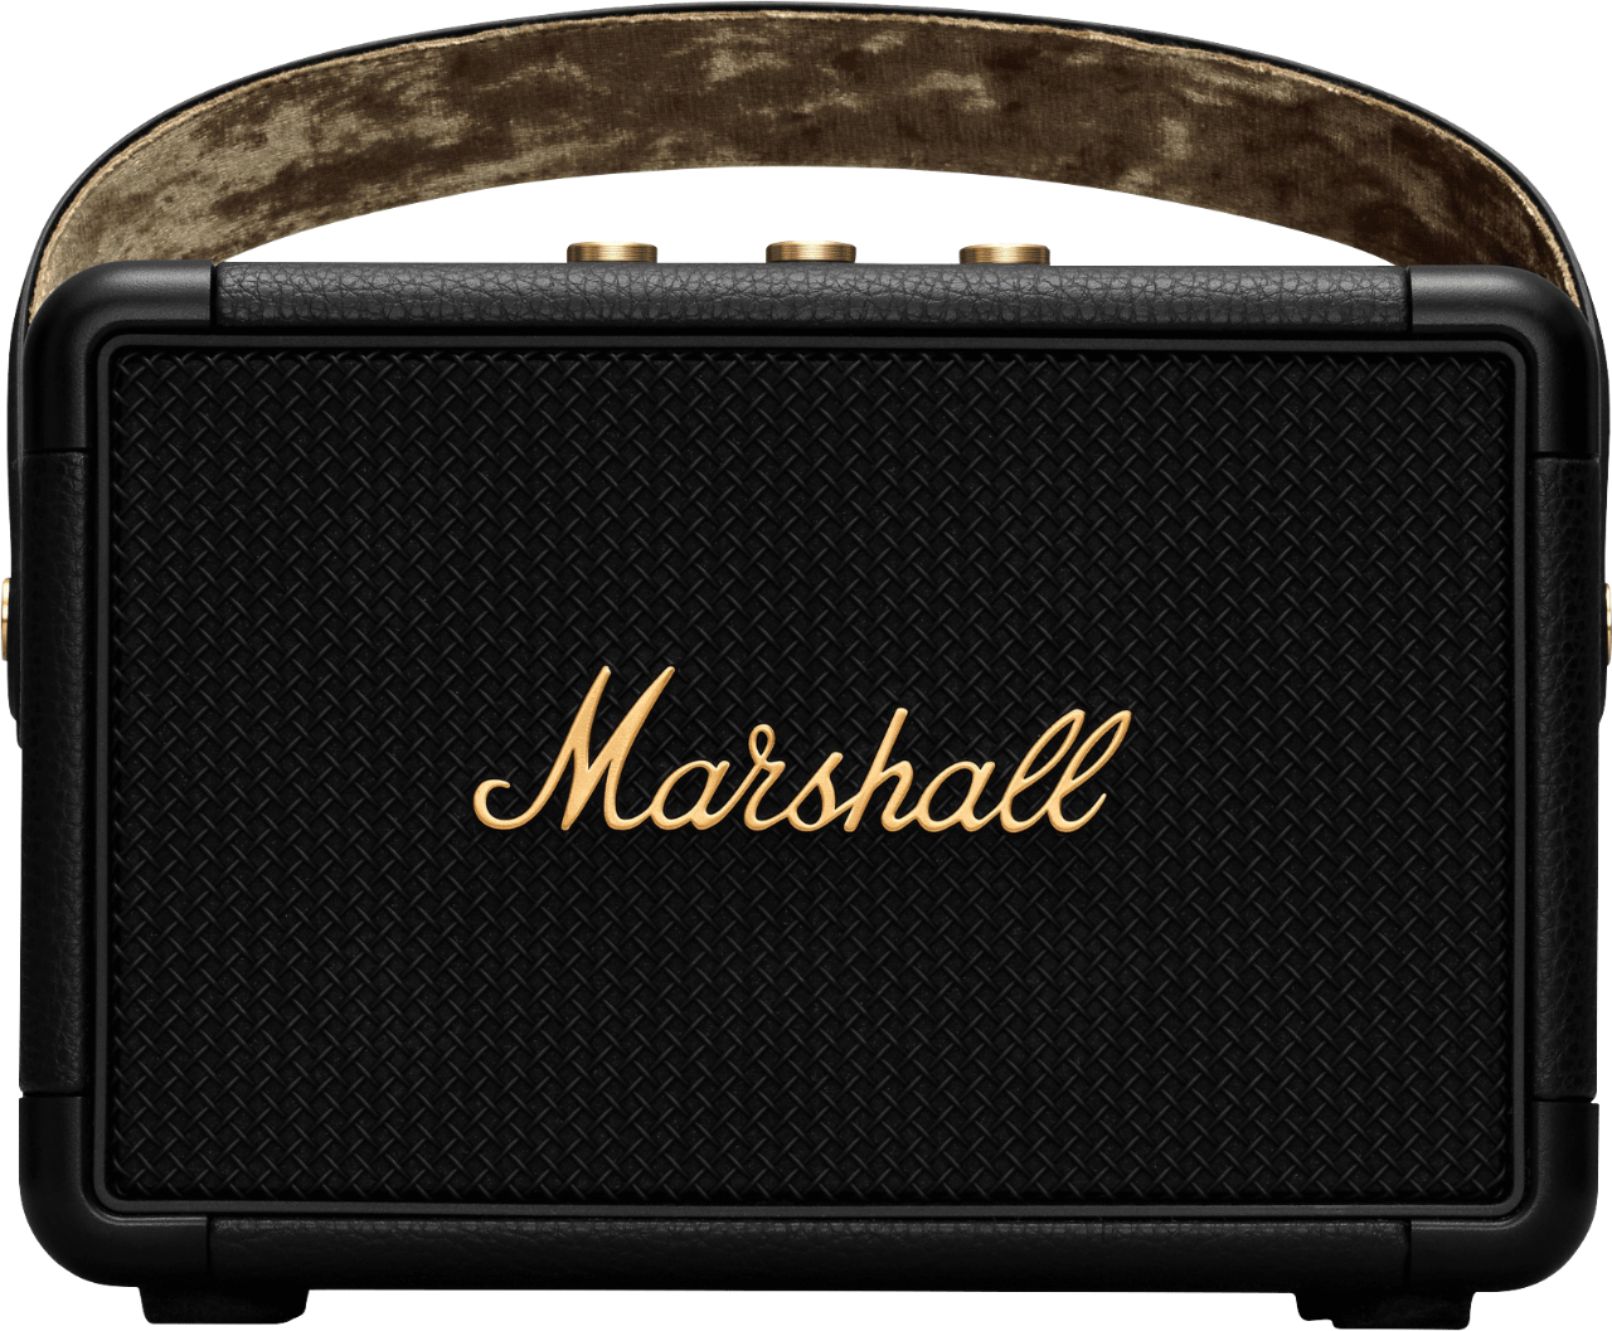 Marshall Kilburn II Portable Bluetooth Speaker Black and Brass